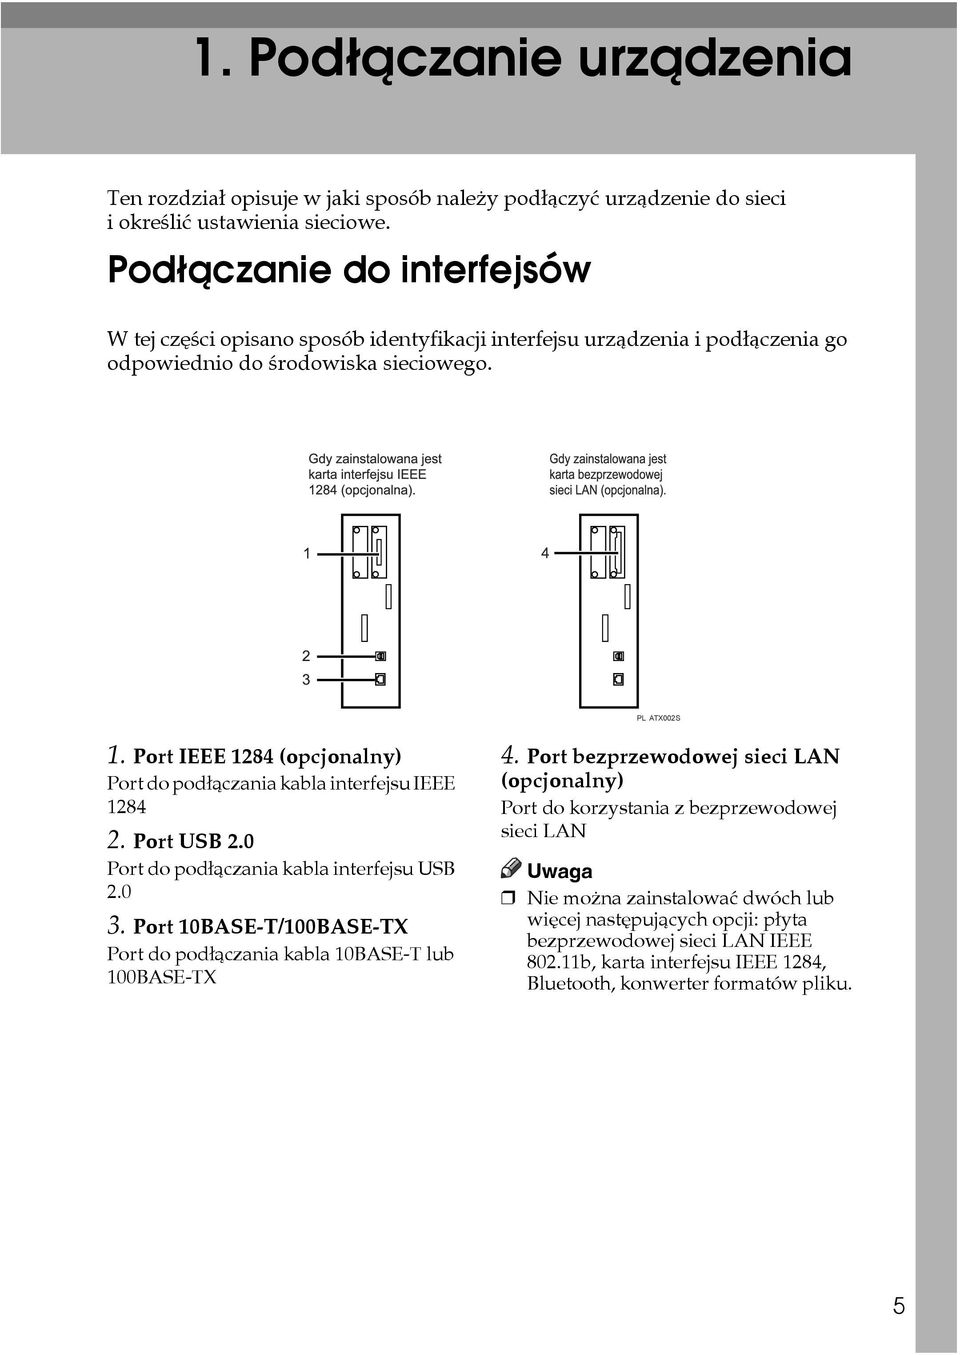 Port IEEE 1284 (opcjonalny) Port do podâàczania kabla interfejsu IEEE 1284 2. Port USB 2.0 Port do podâàczania kabla interfejsu USB 2.0 3.